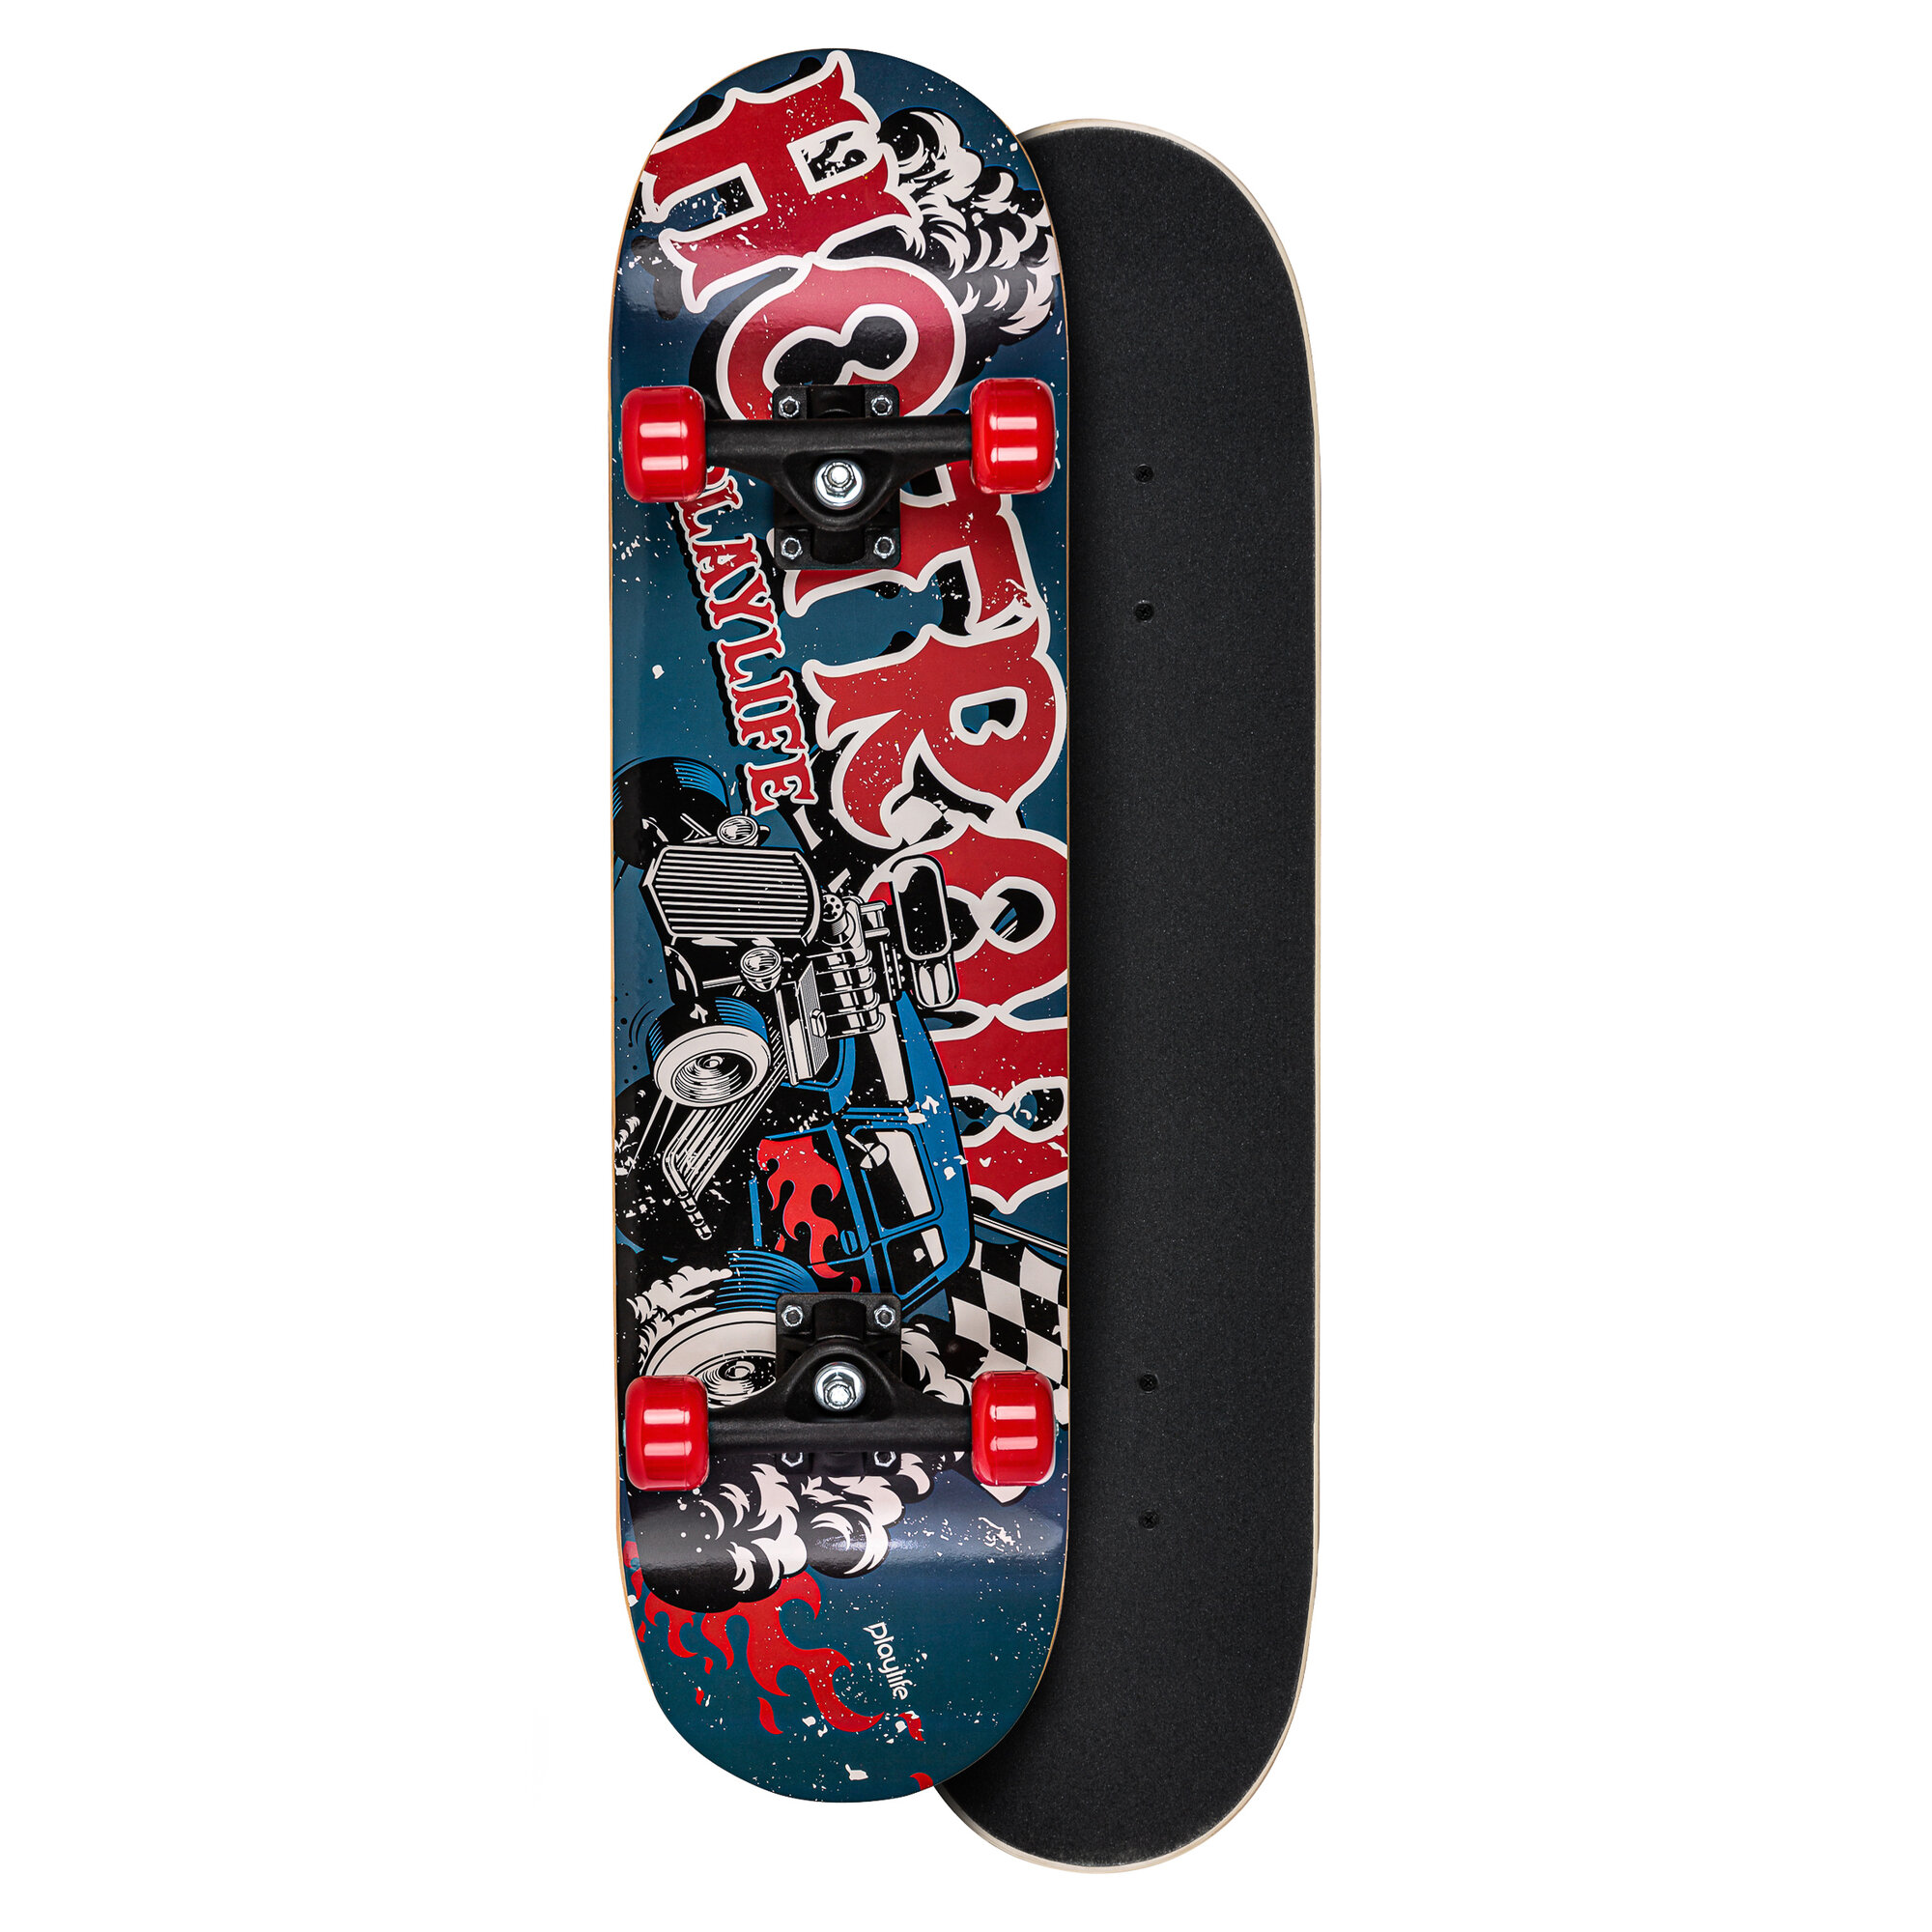 Stænke Sammensætning skolde Playlife Illusion Hotrod Skateboard Kr. 249 - på lager til omgående levering